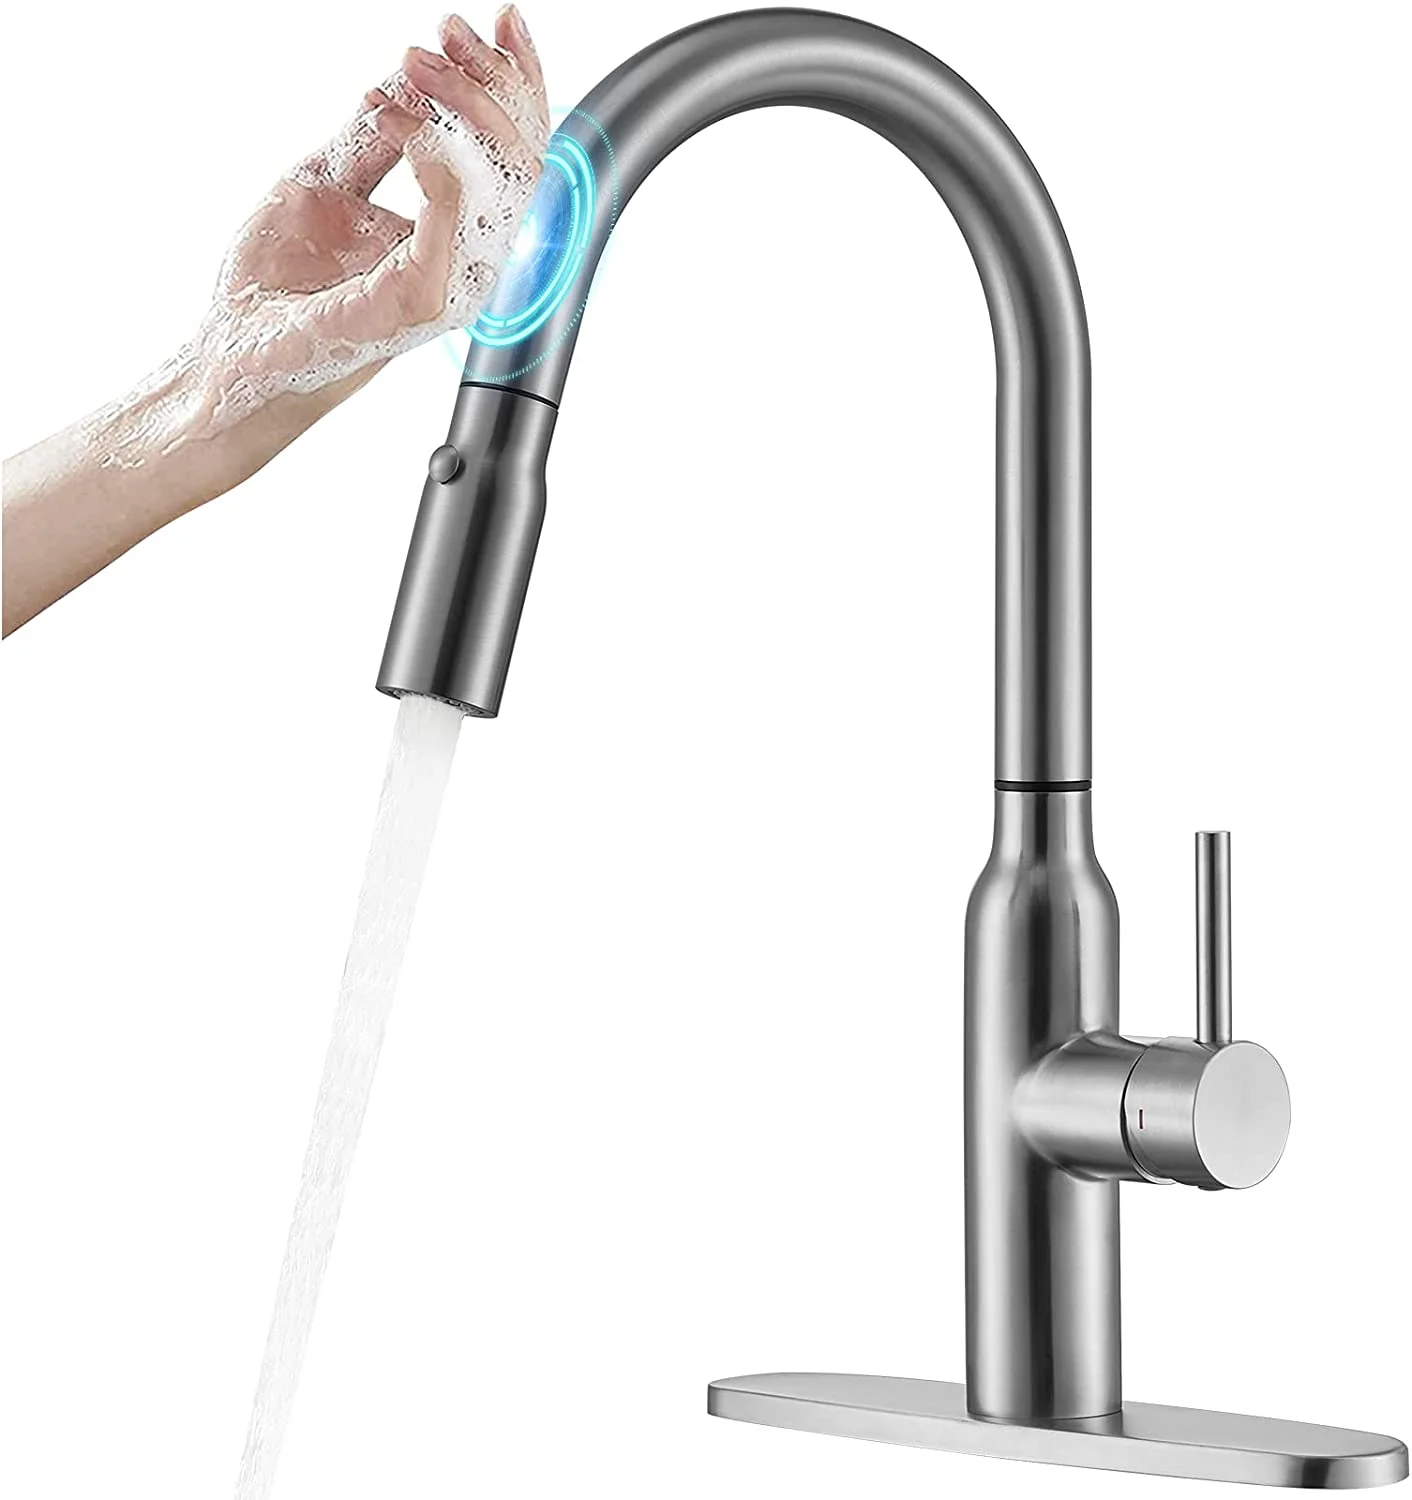 Crea smart touch kitchen faucet